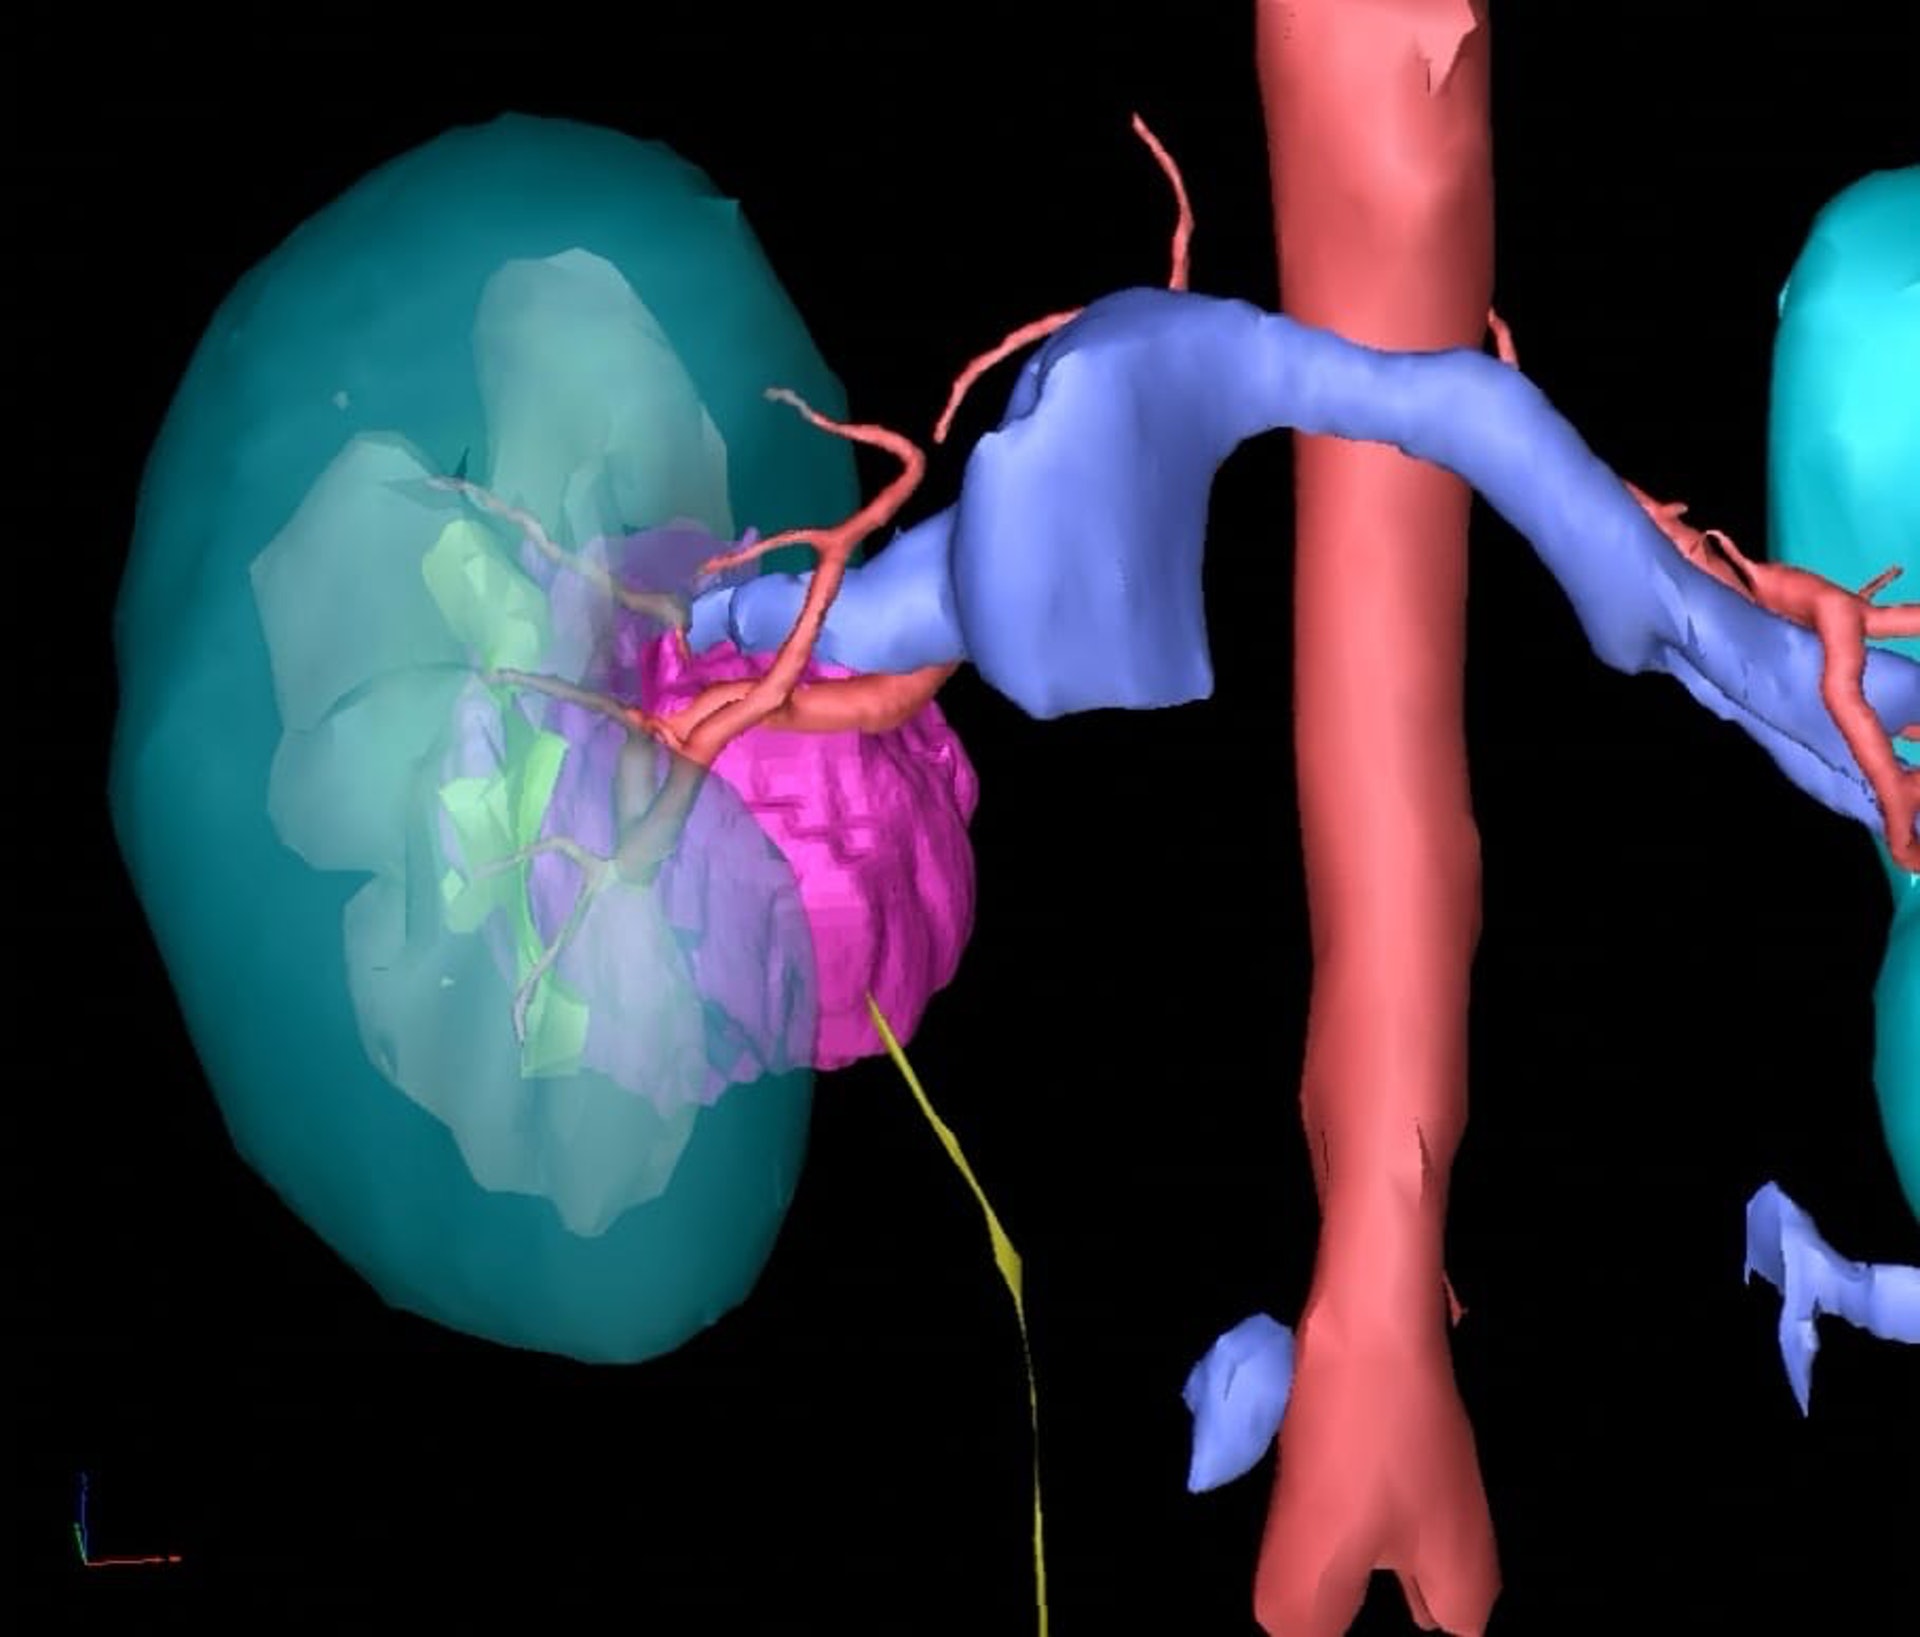 醫生會在手術前利用電腦掃描三維重建技術分析腫瘤與周邊血管組織的關係，圖中紫色部分為腫瘤位置。